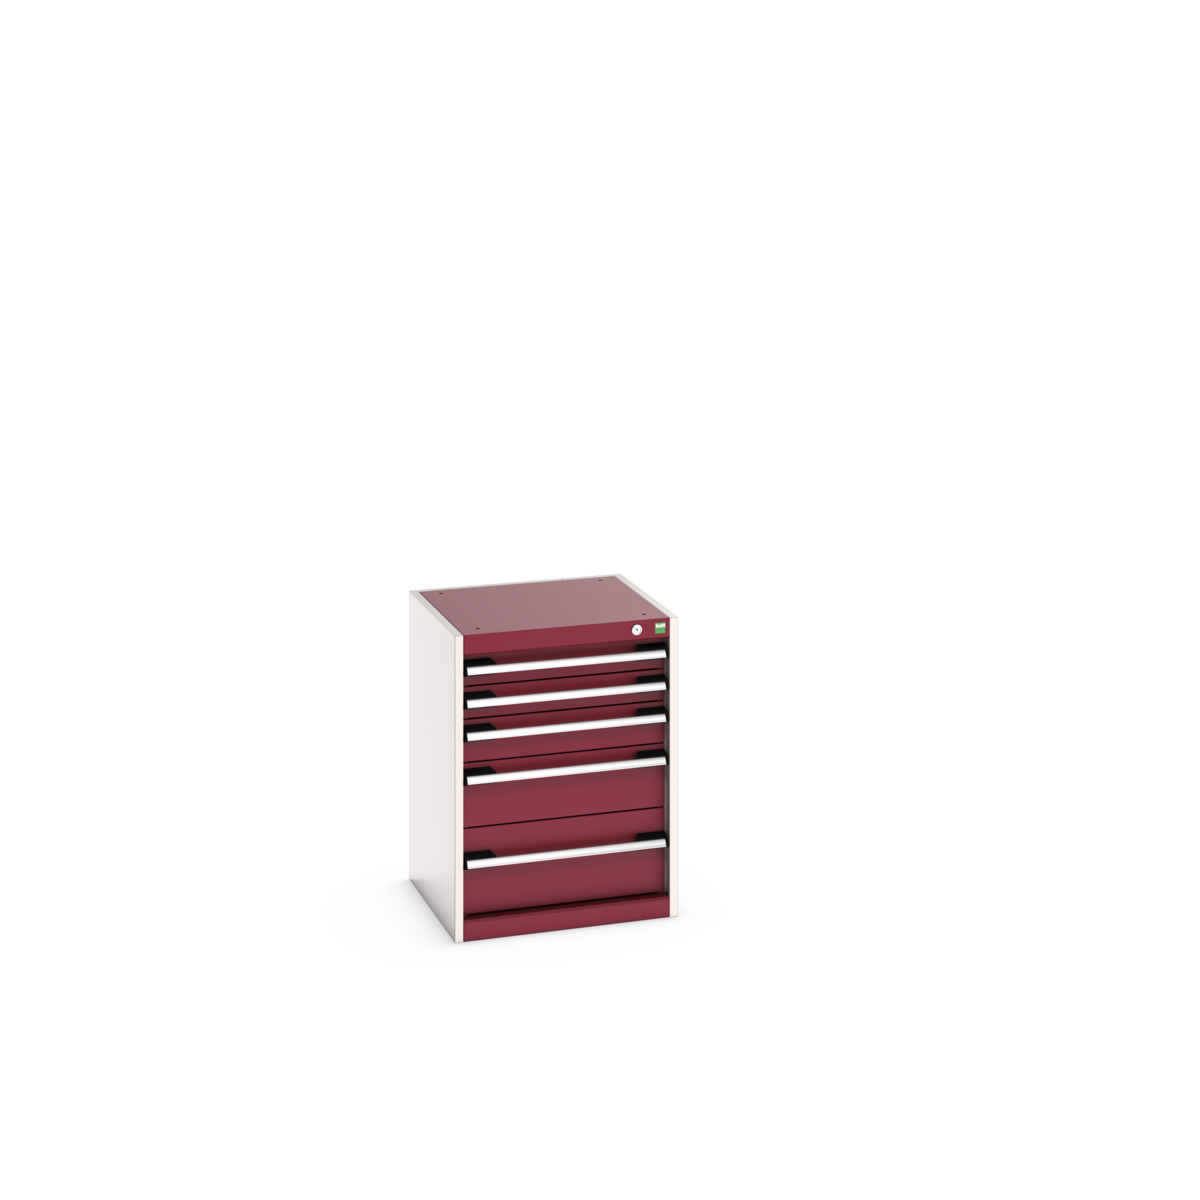 40010115.24V - cubio drawer cabinet